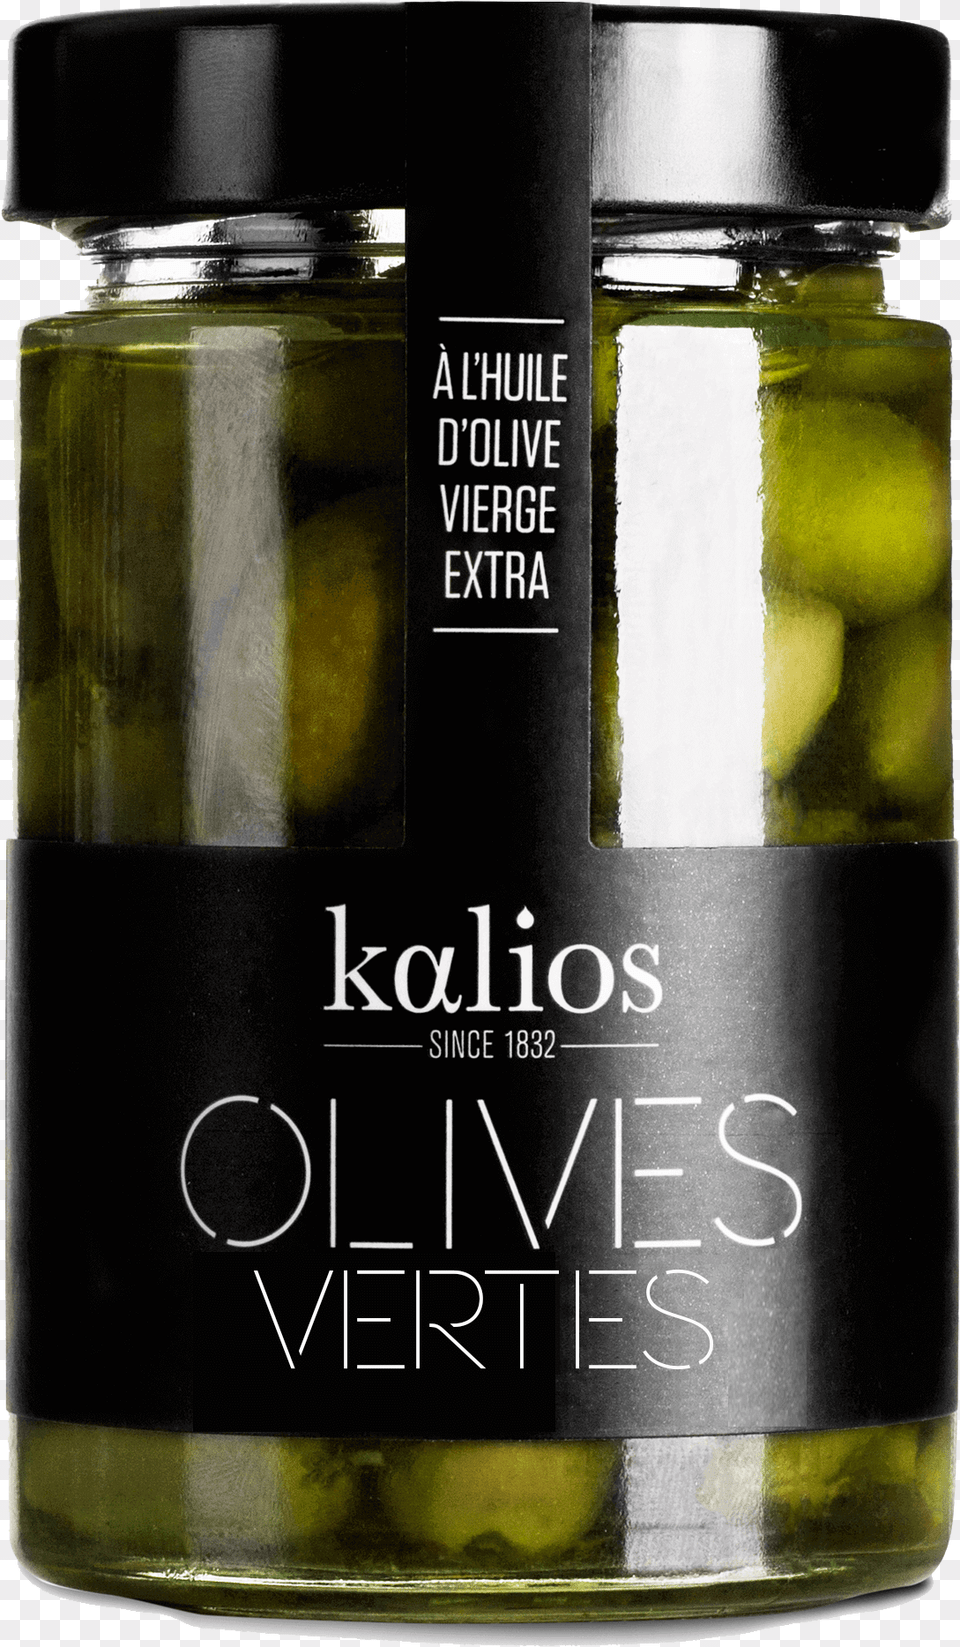 Green Olives In Olive Oil, Food, Relish, Pickle, Bottle Free Transparent Png